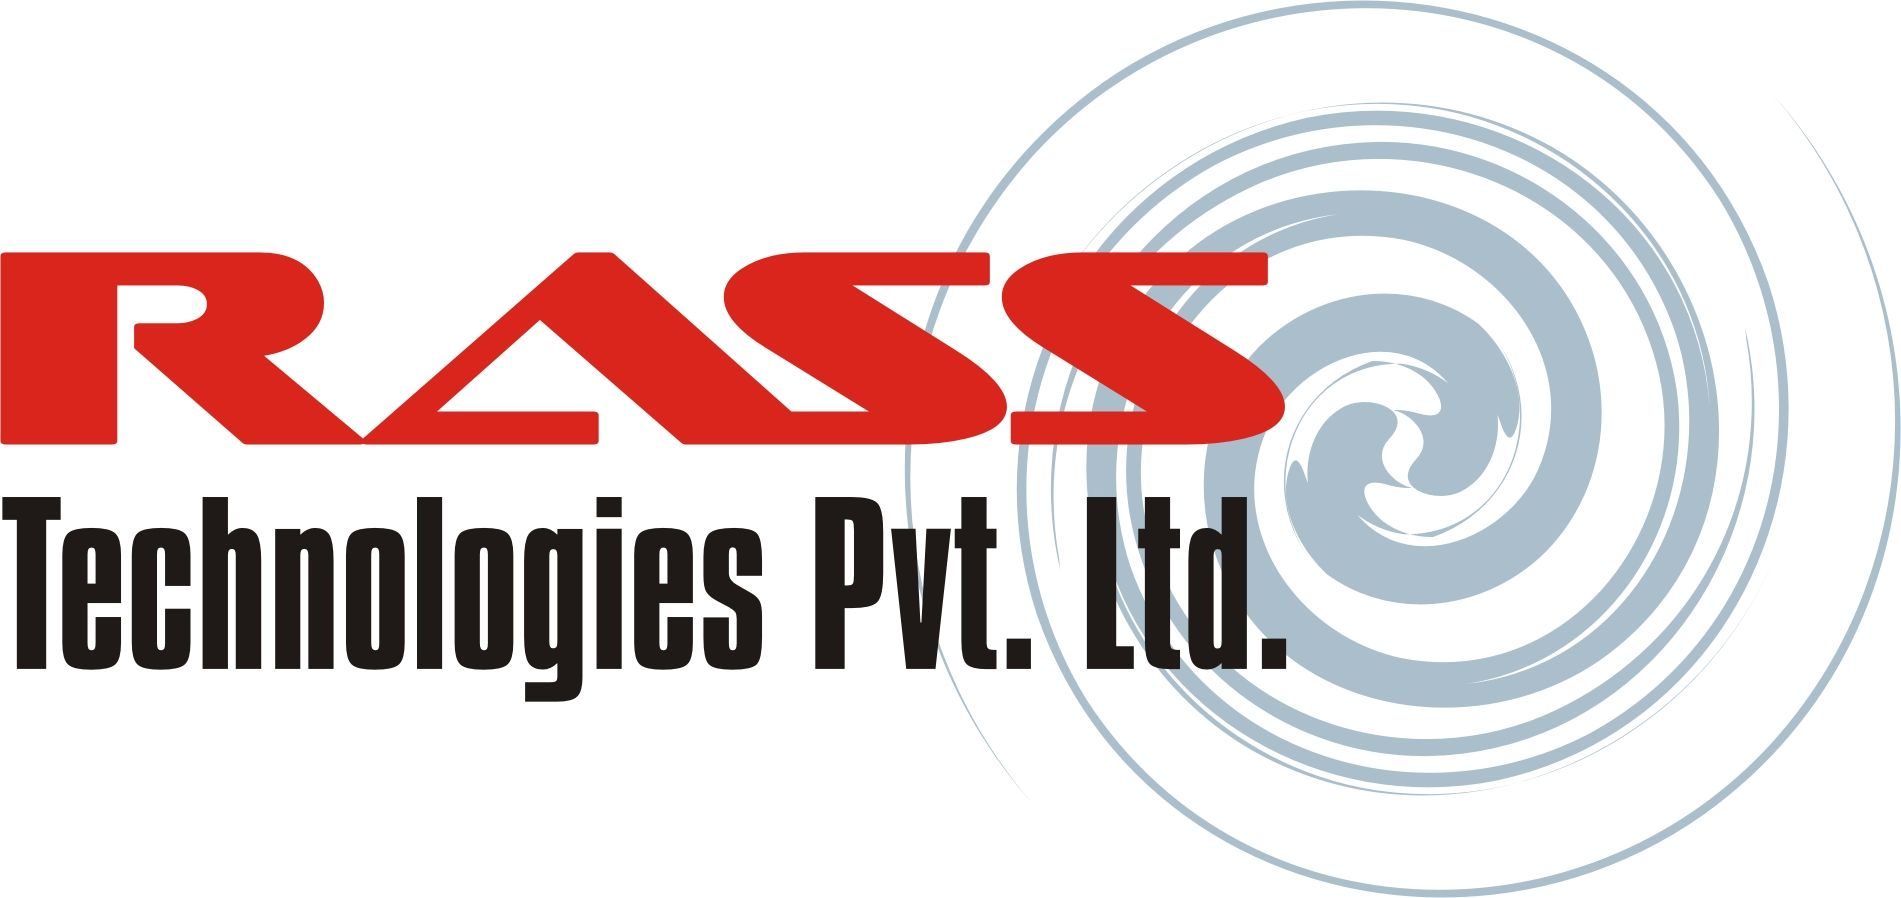 RASS Technologies